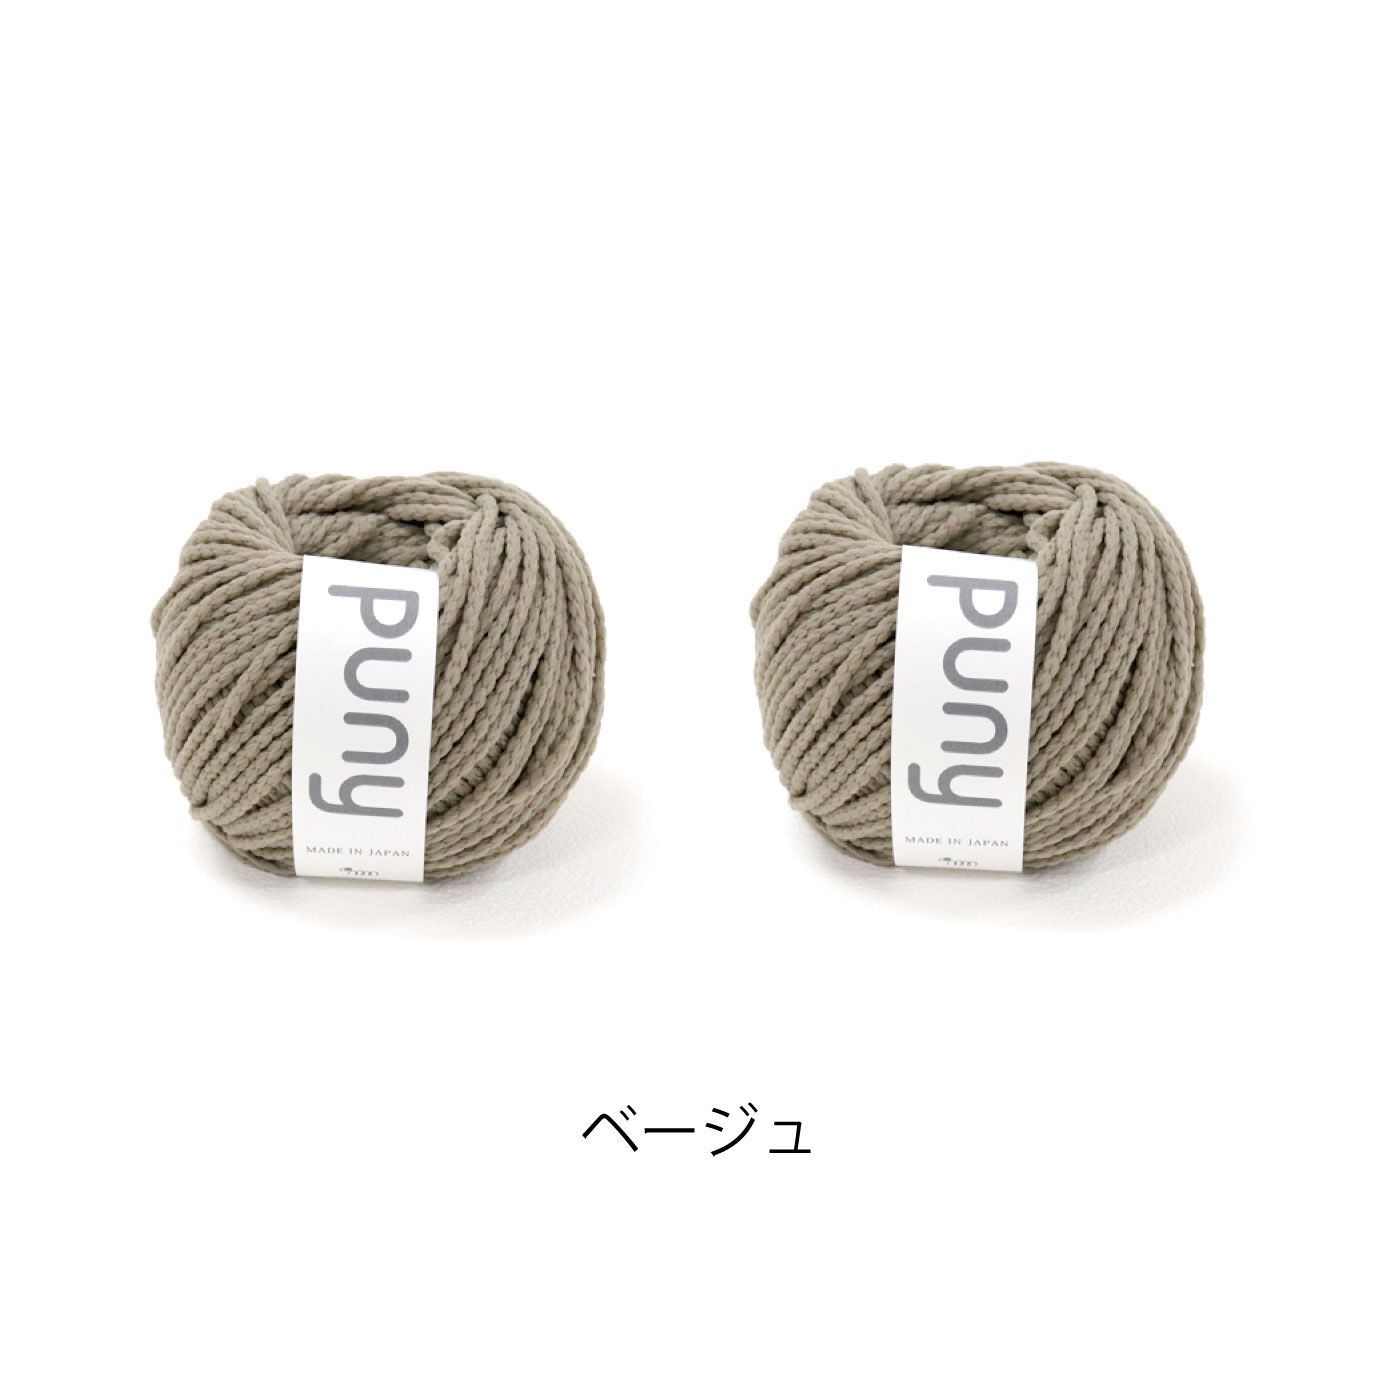 FELISSIMO PARTNERS|ふわ軽毛糸Pｕｎｙで編む　sawada itto：amuri　しずく型バスケットキット